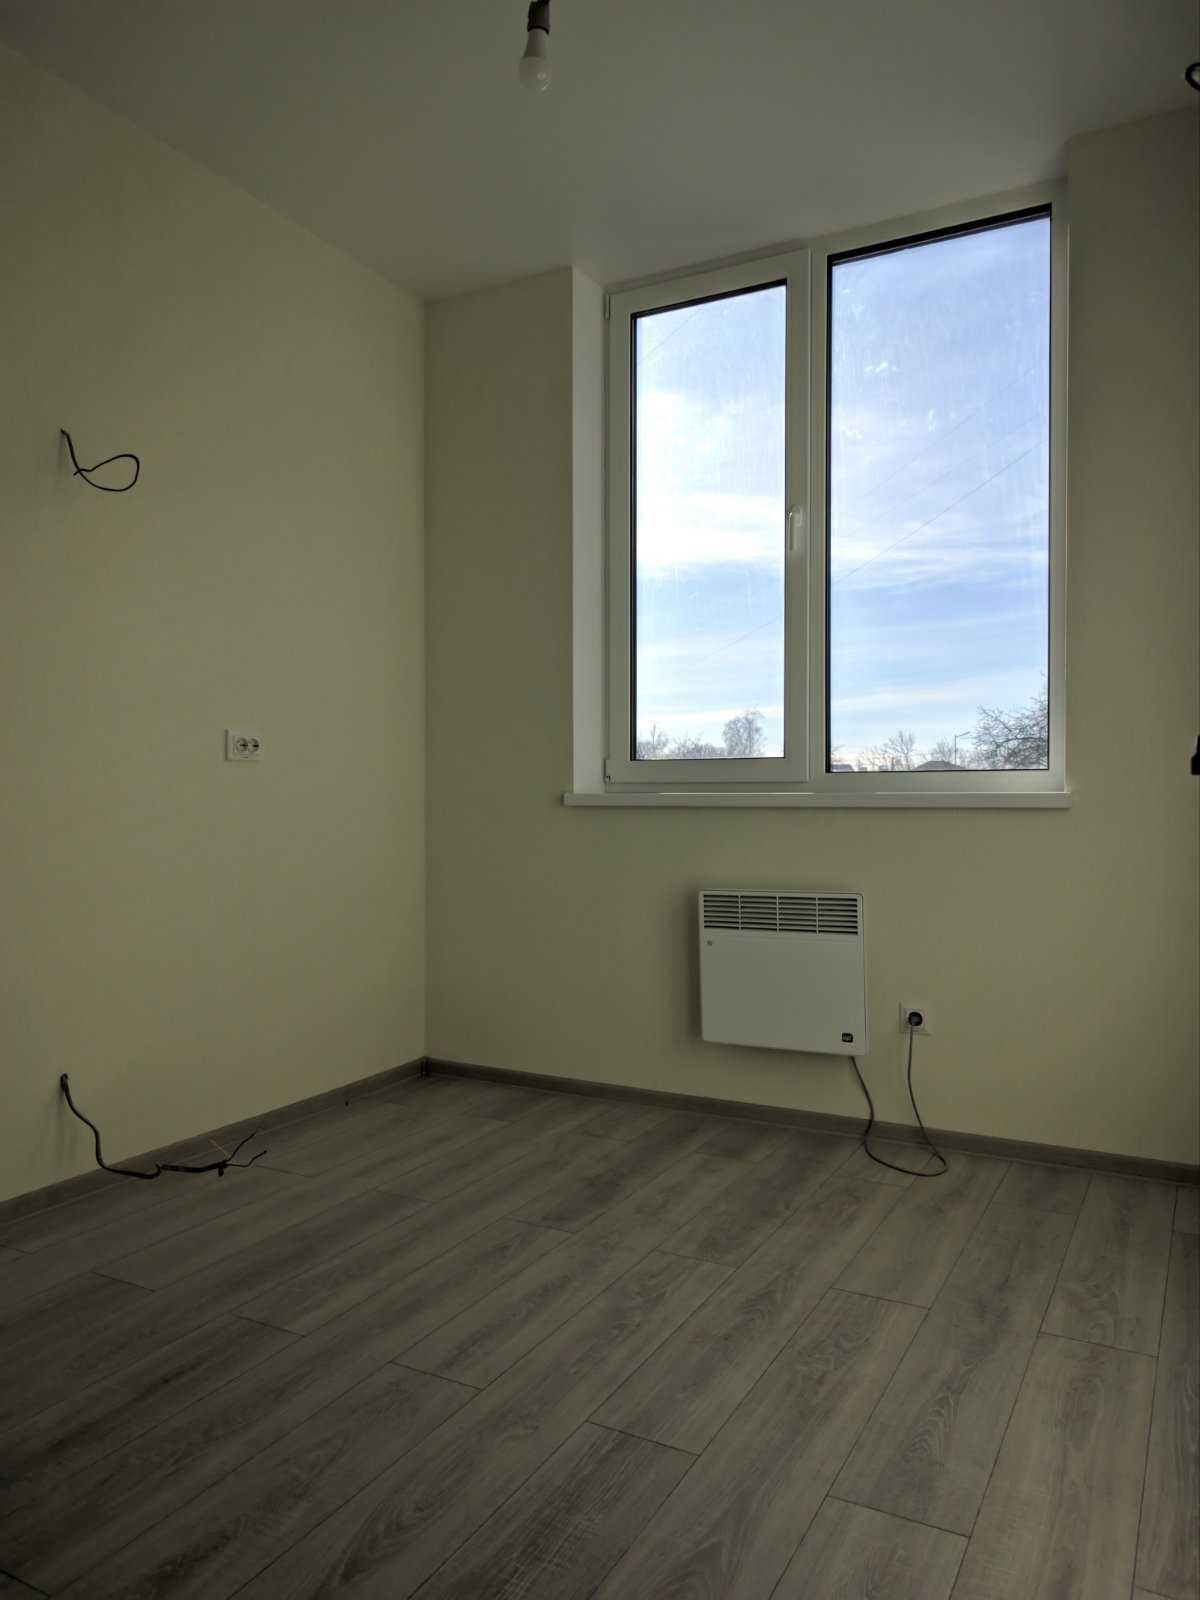 Продам 1-кімнатну квартиру ЖК «Plaza Kvartal. Без %